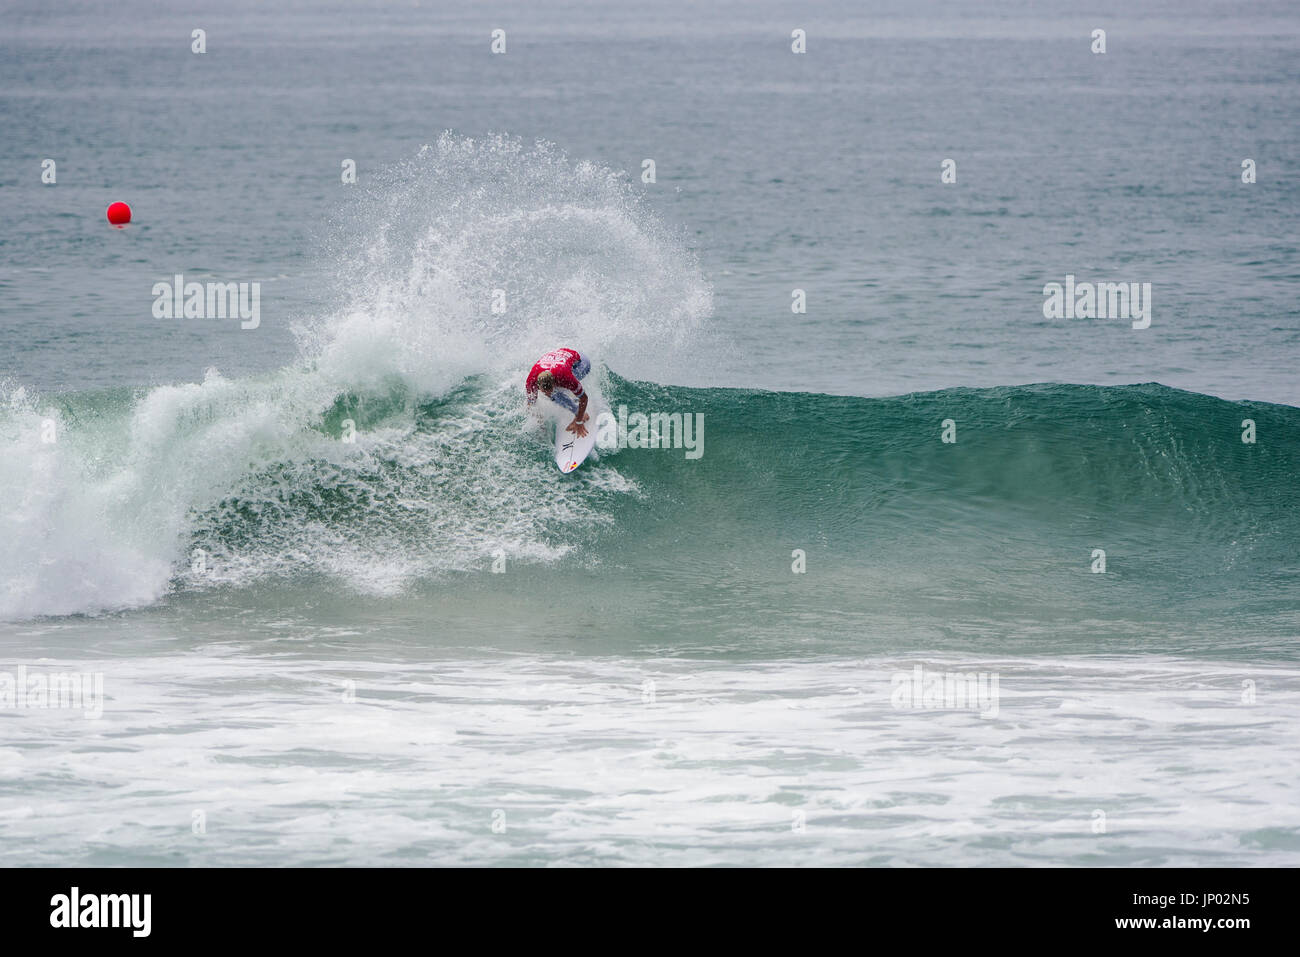 Huntington Beach, FL, USA. 31. Juli 2017. Kolohe Andino (USA) konkurriert in der 2. Runde des Wettbewerbs auf den 2017 VANS uns Open of Surfing. Bildnachweis: Benjamin Ginsberg/Alamy Live-Nachrichten. Stockfoto